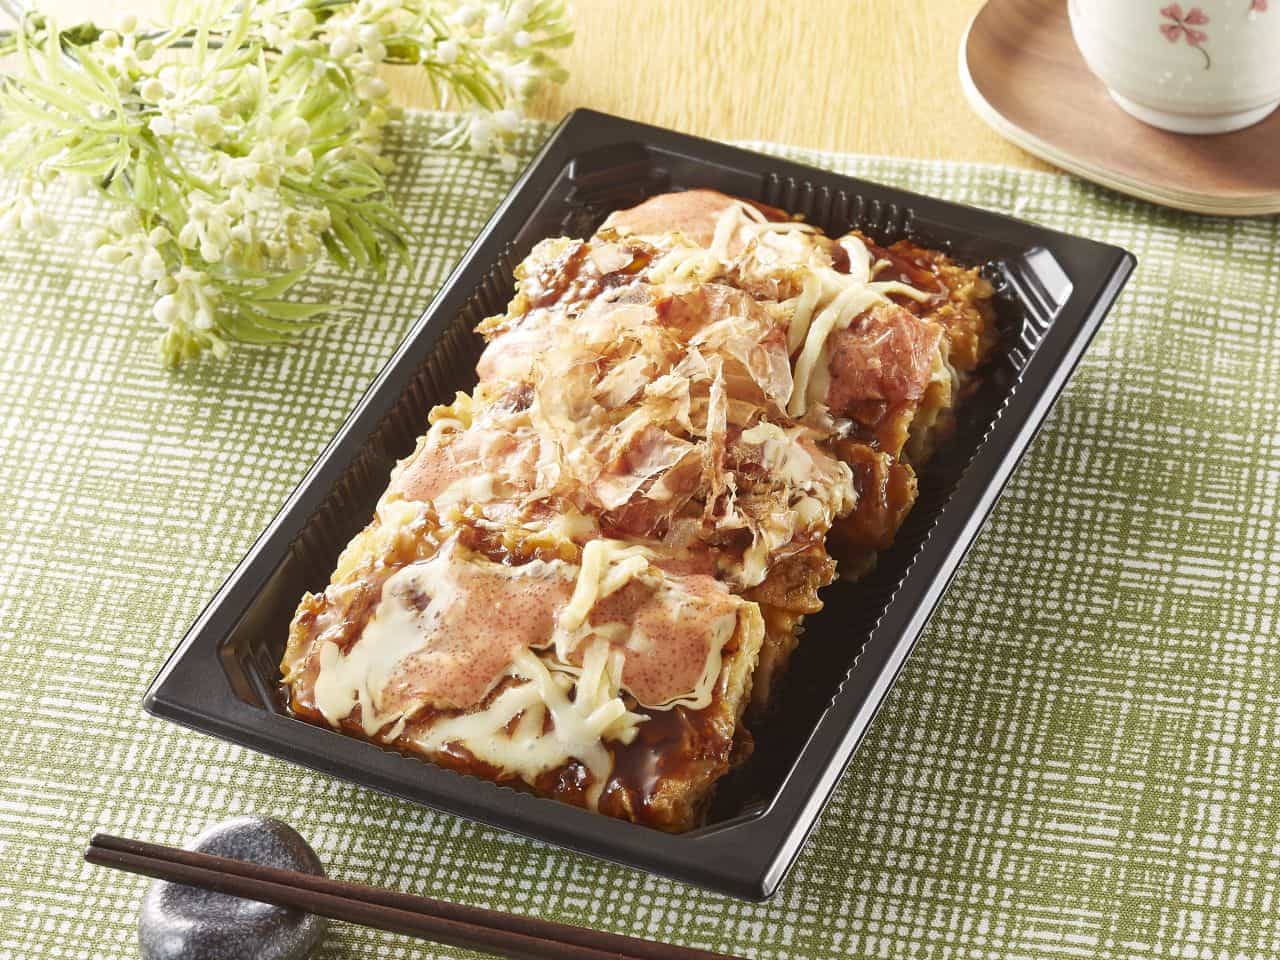 Ministop "Mentaiko Mayo Cheese Okonomiyaki (with Hakata Mentaiko)